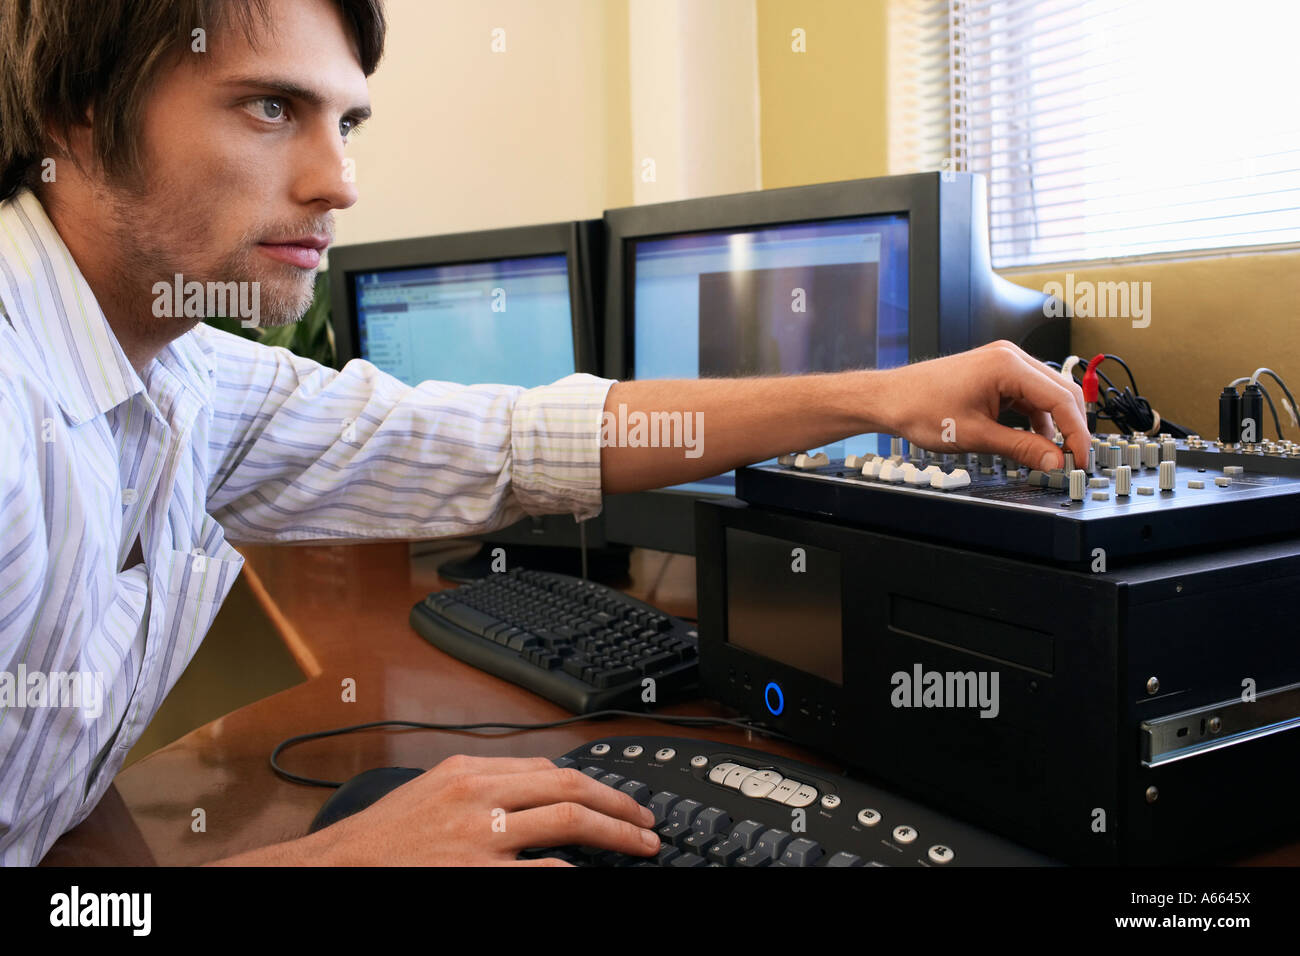 L'homme à l'aide du clavier de l'ordinateur et bouton de réglage situé sur  le mélangeur Photo Stock - Alamy